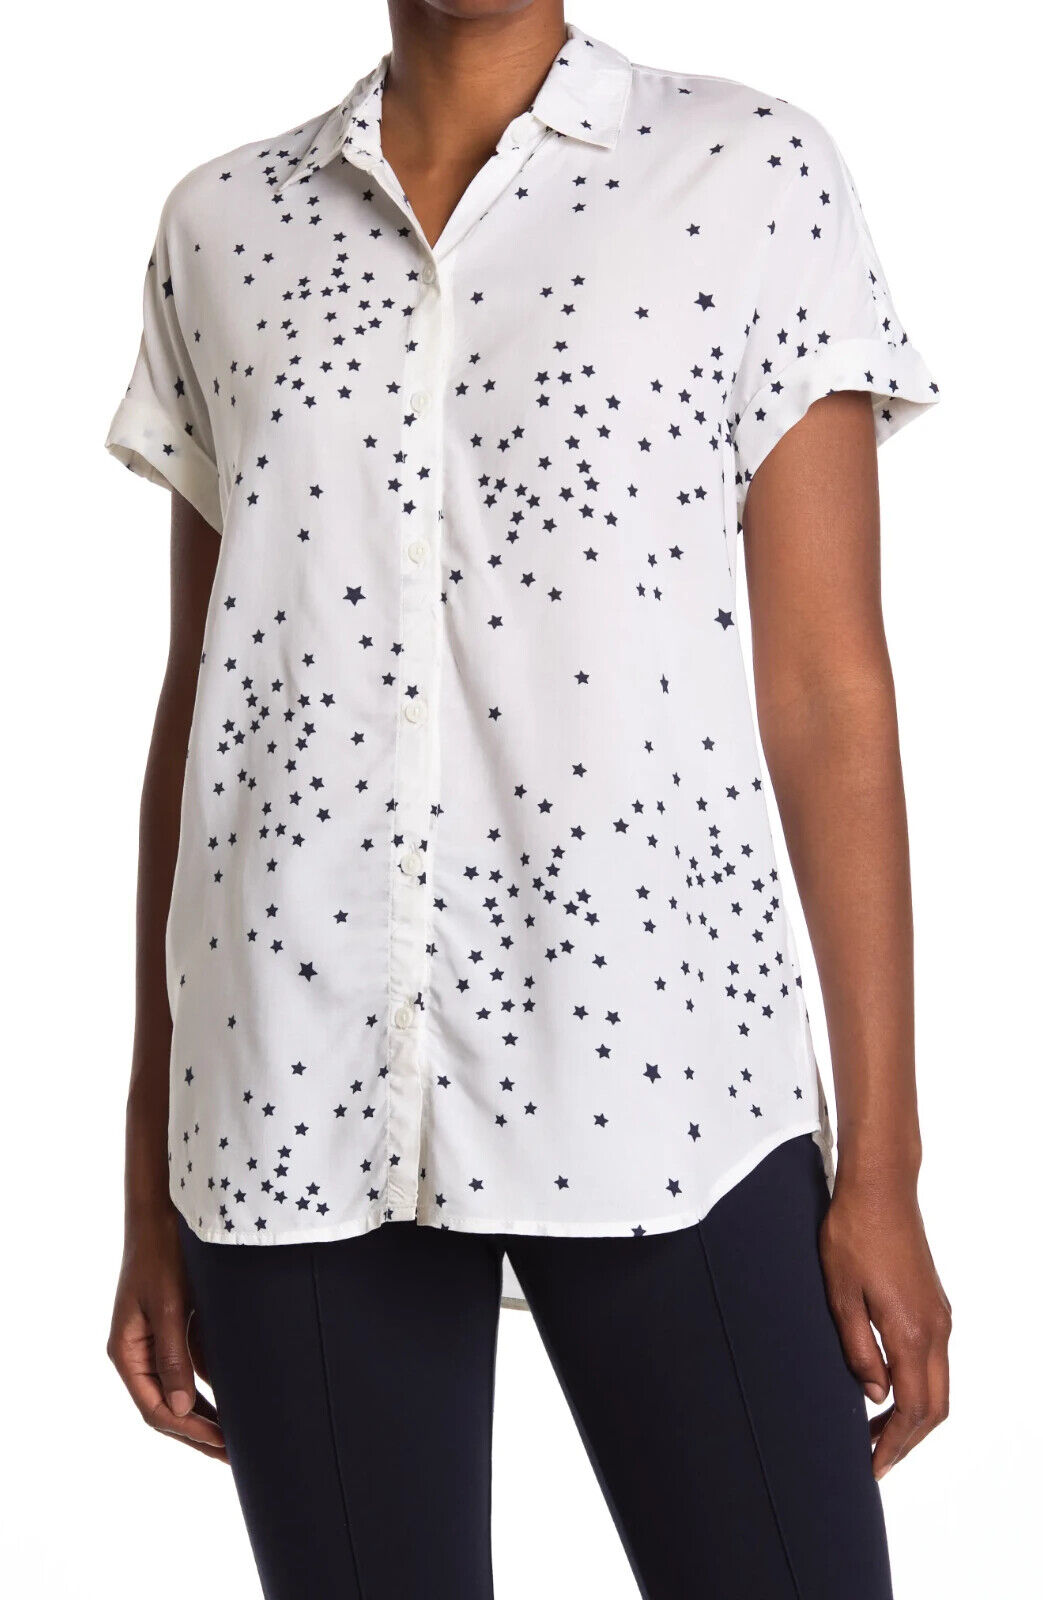 BEACH LUNCH LOUNGE Рубашка Spencer Star с пуговицами спереди и изогнутым краем XL